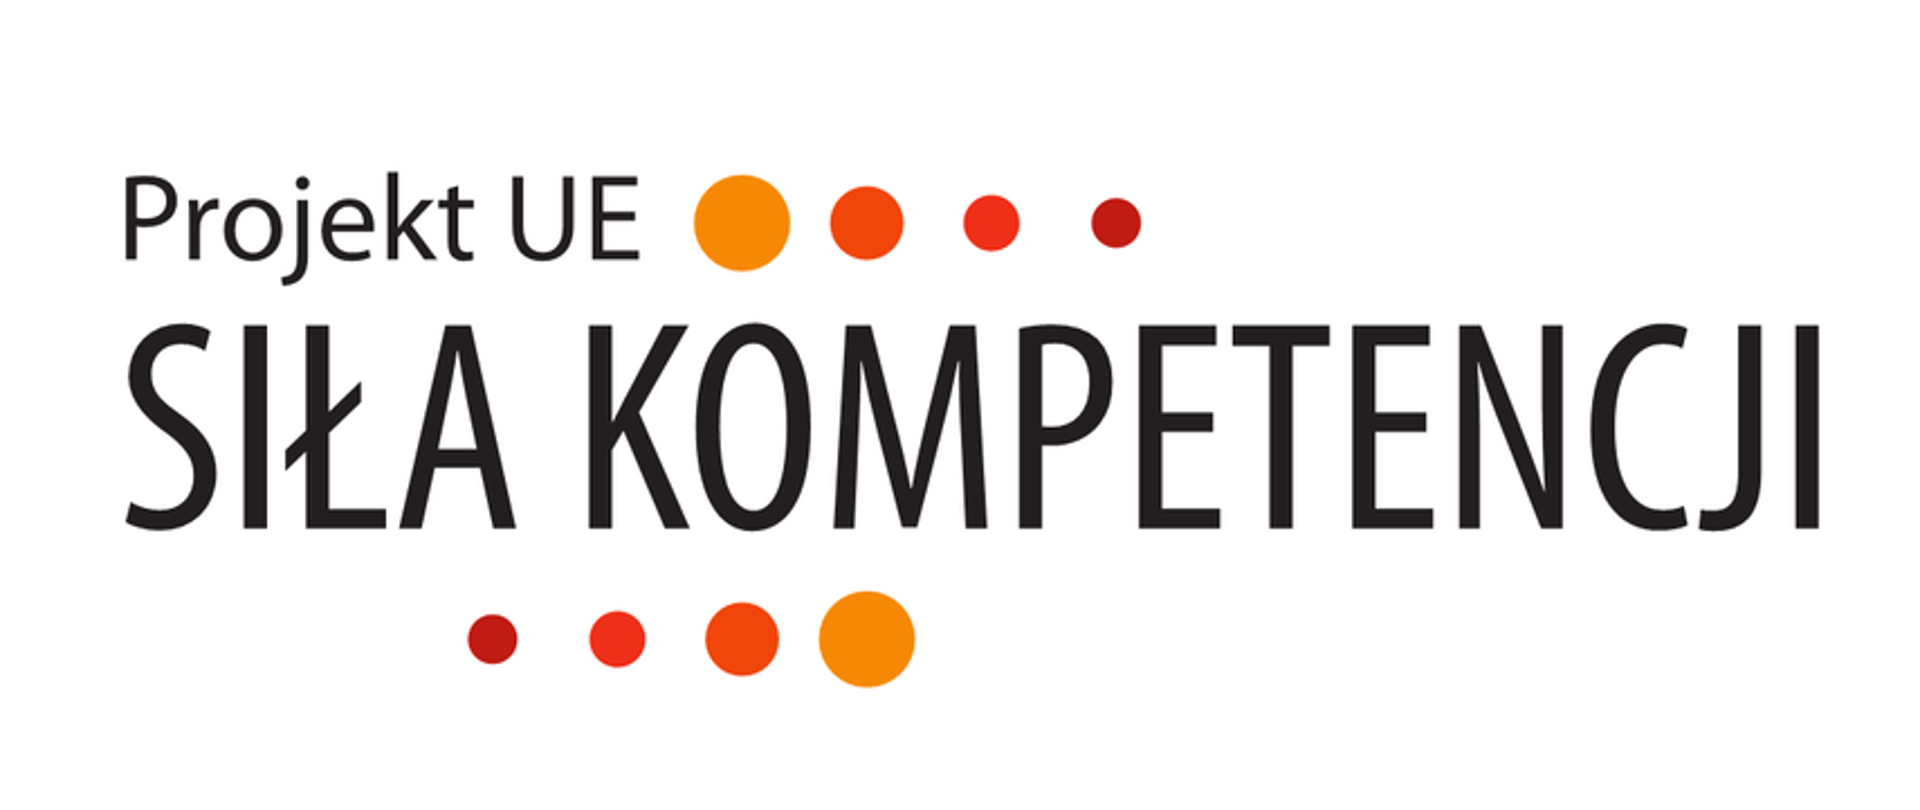 Plakat projektu utrzymany w jasnej kolorystyce bieli z akcentami błękitu, pomarańczu i czerwieni, na górze logotypy projektu, poniżej informacje o projekcie i dane kontaktowe Instytutu Turystyki w Krakowie